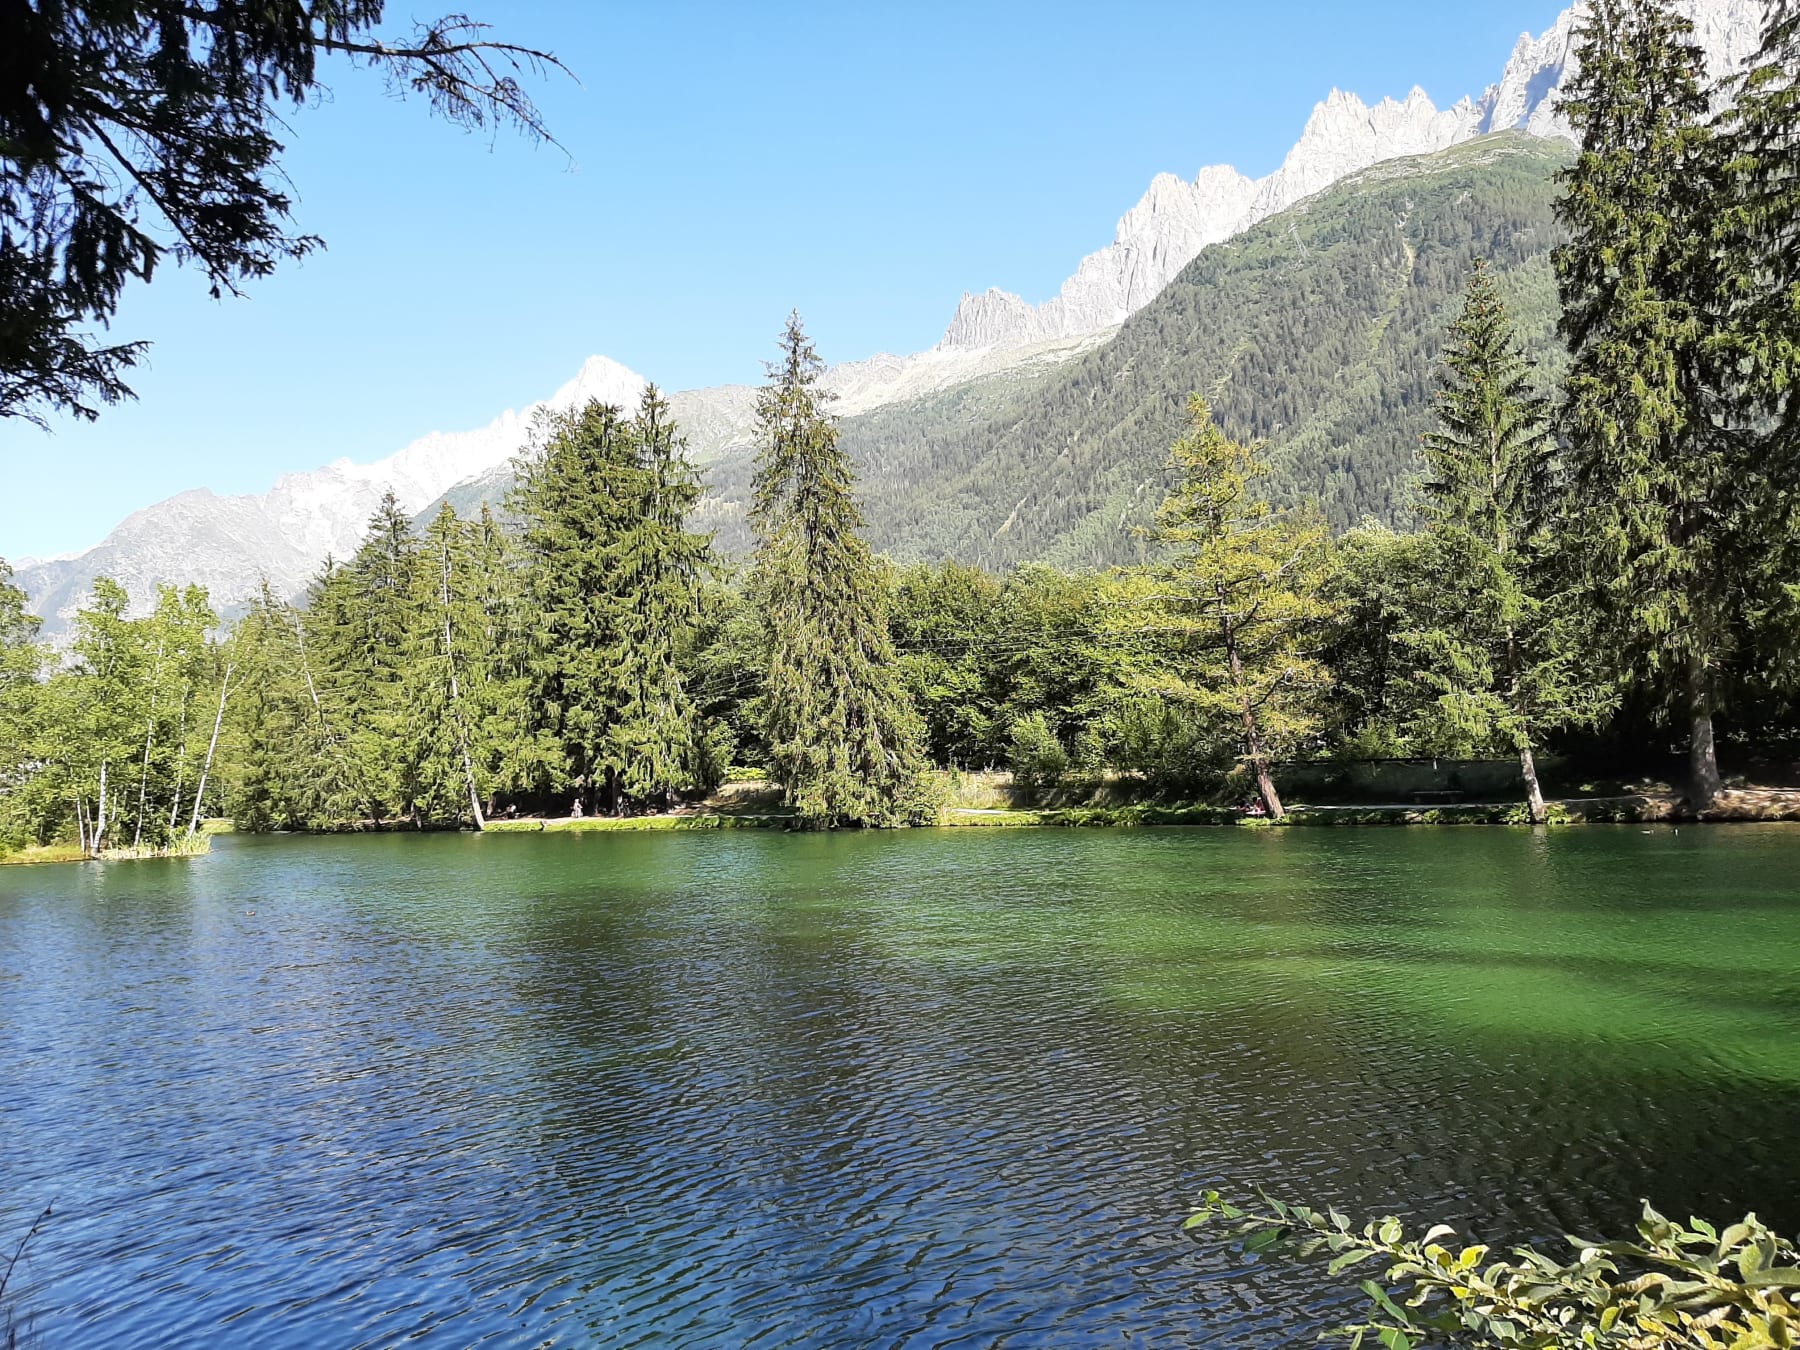 Randonnée Chamonix-Mont-Blanc - Balade urbaine à Chamonix et sublime lac des Gaillands